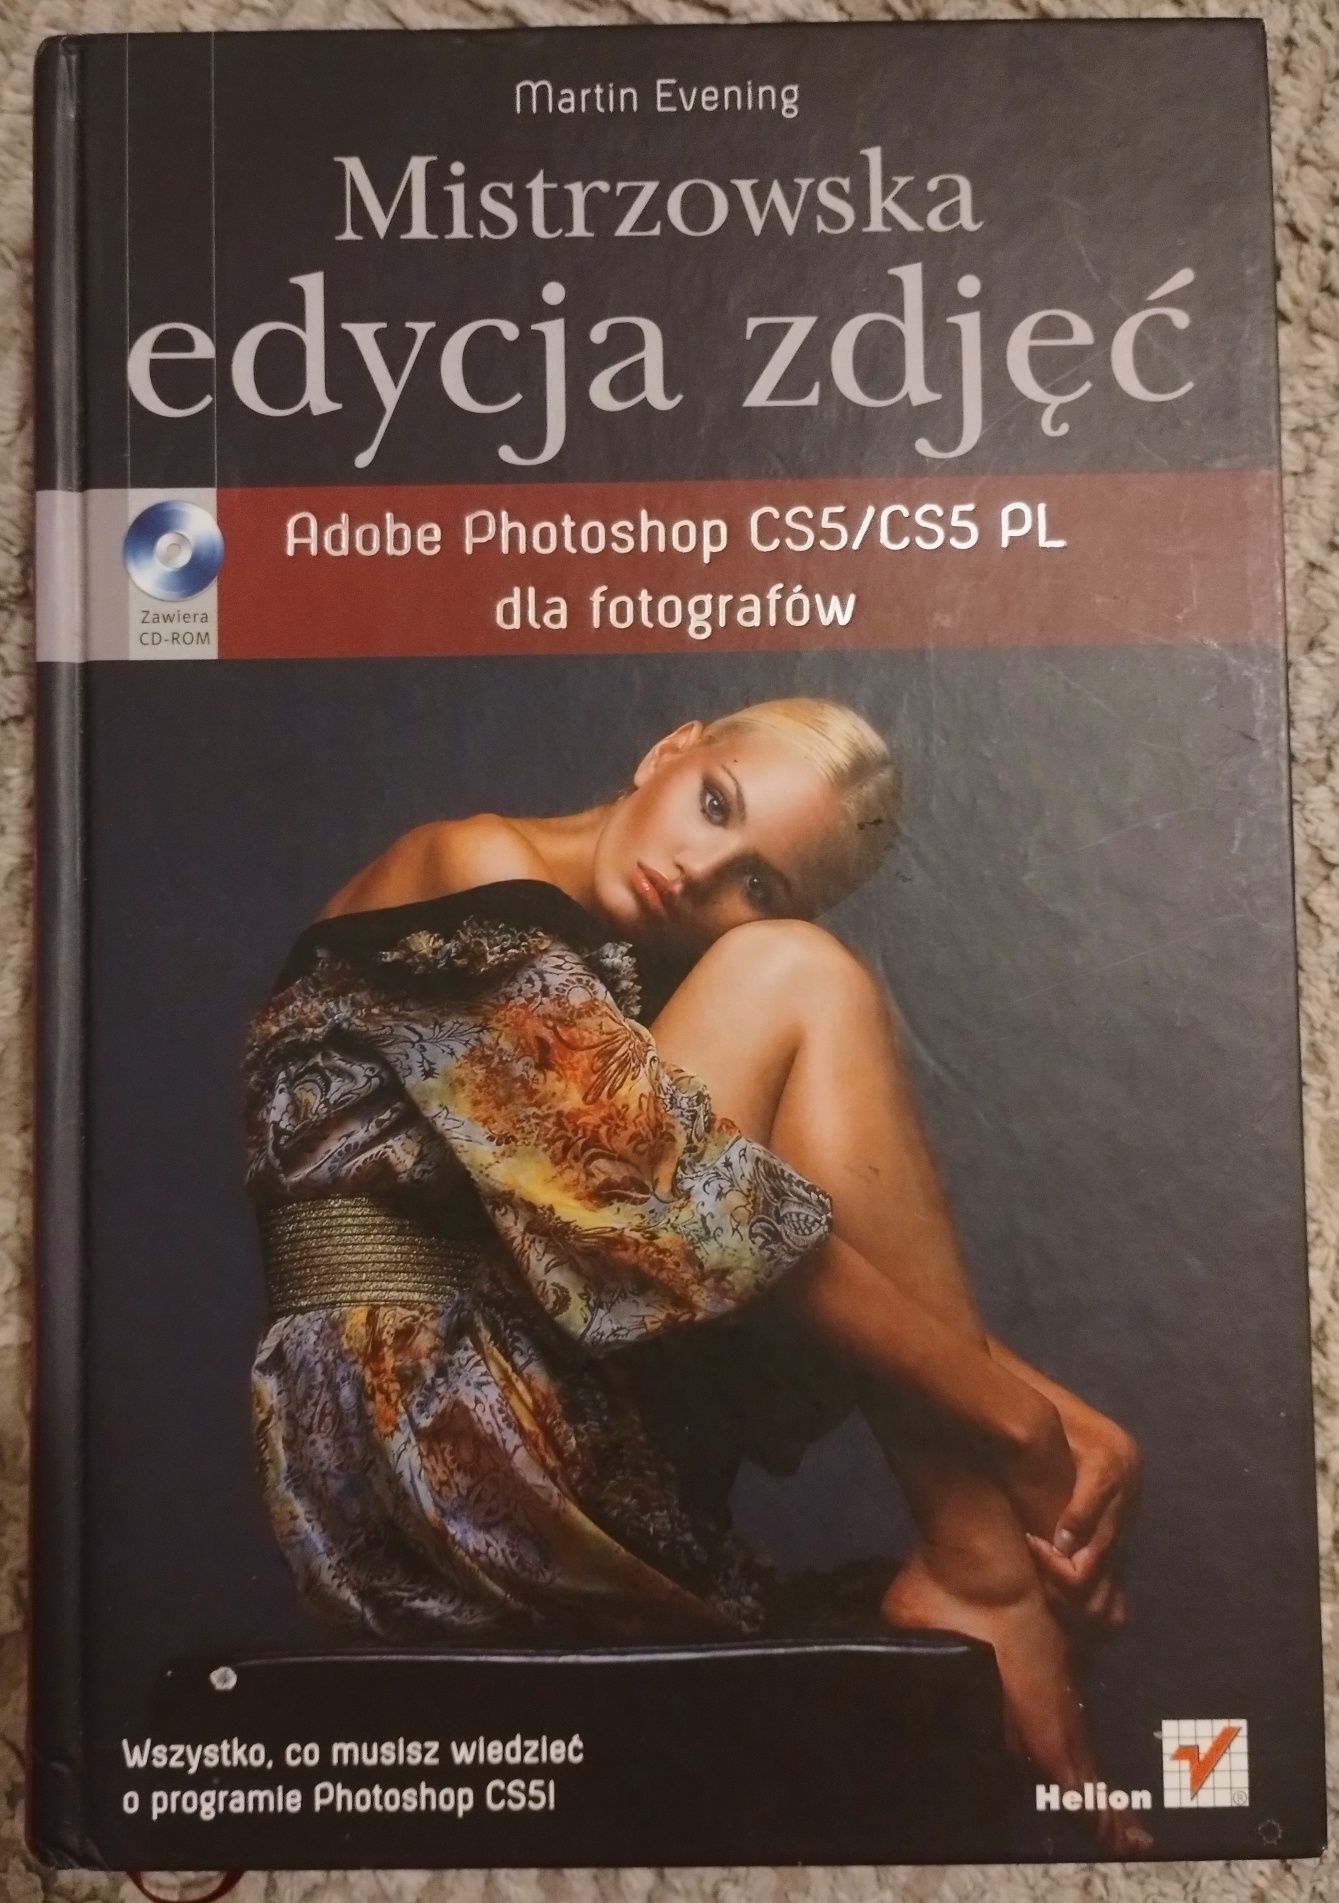 Mistrzowska edycja zdjęć Adobe Photoshop CS5/CS5 PL dla fotografów